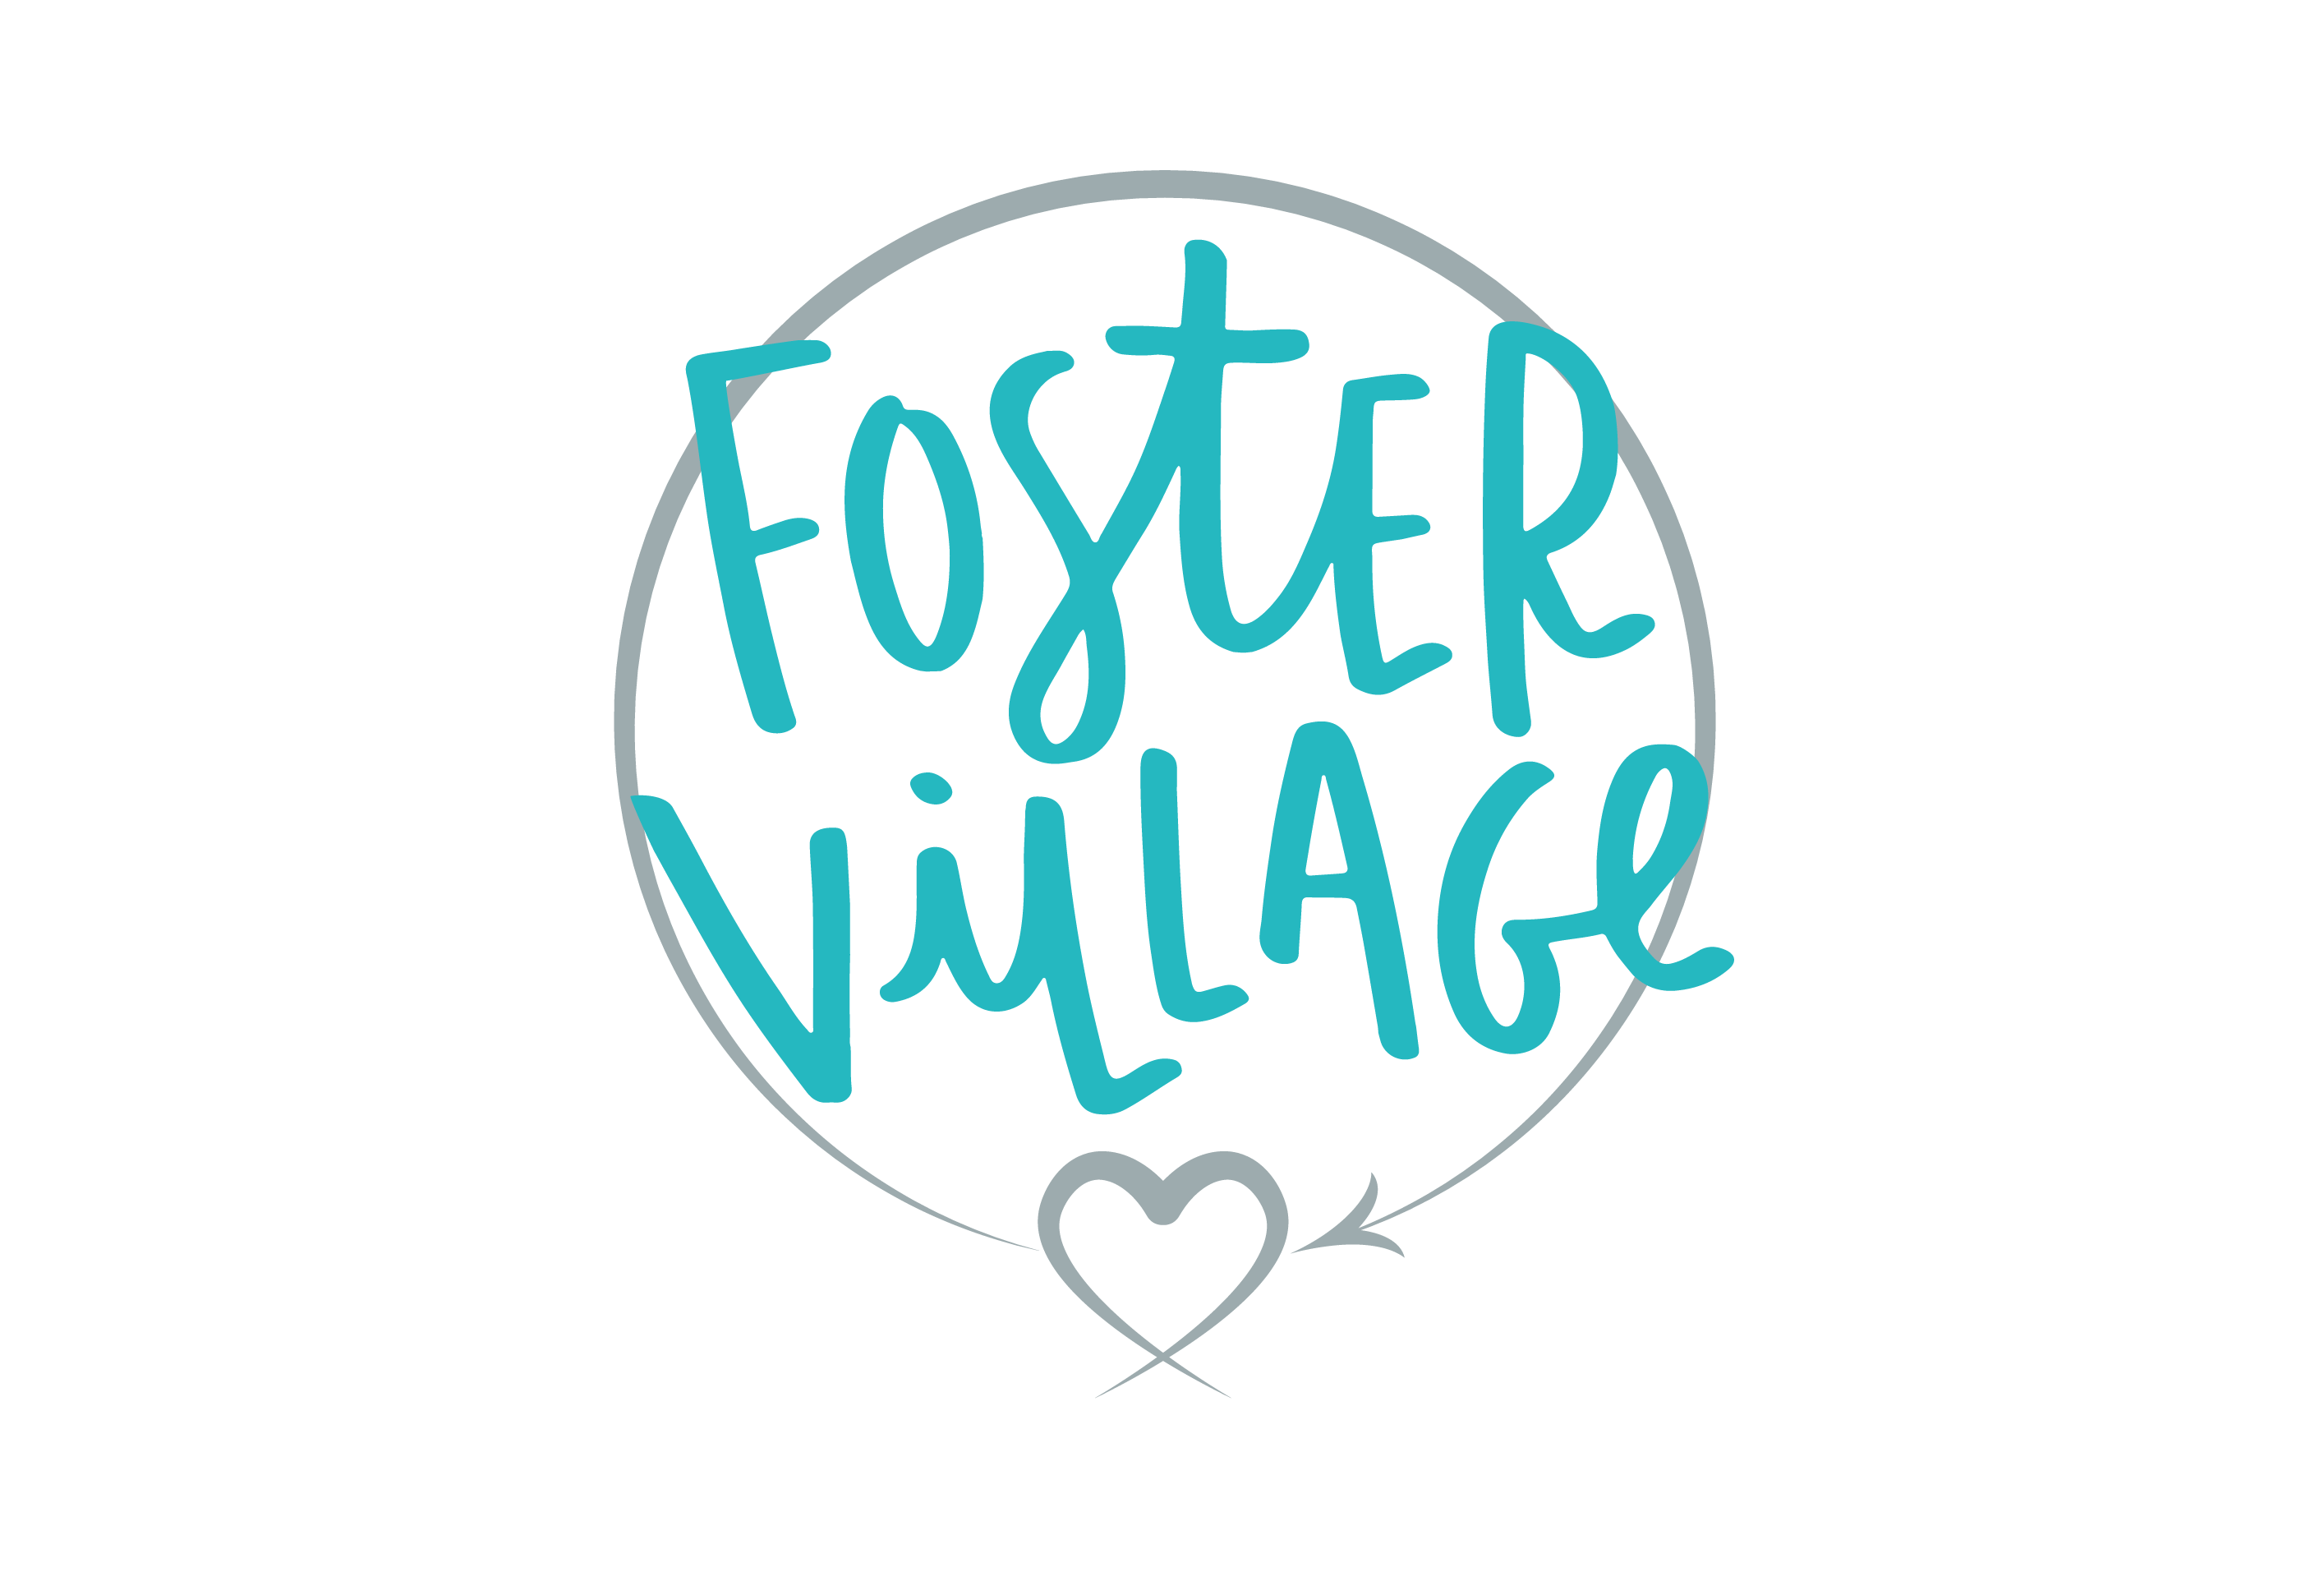 Foster Village Charlotte logo